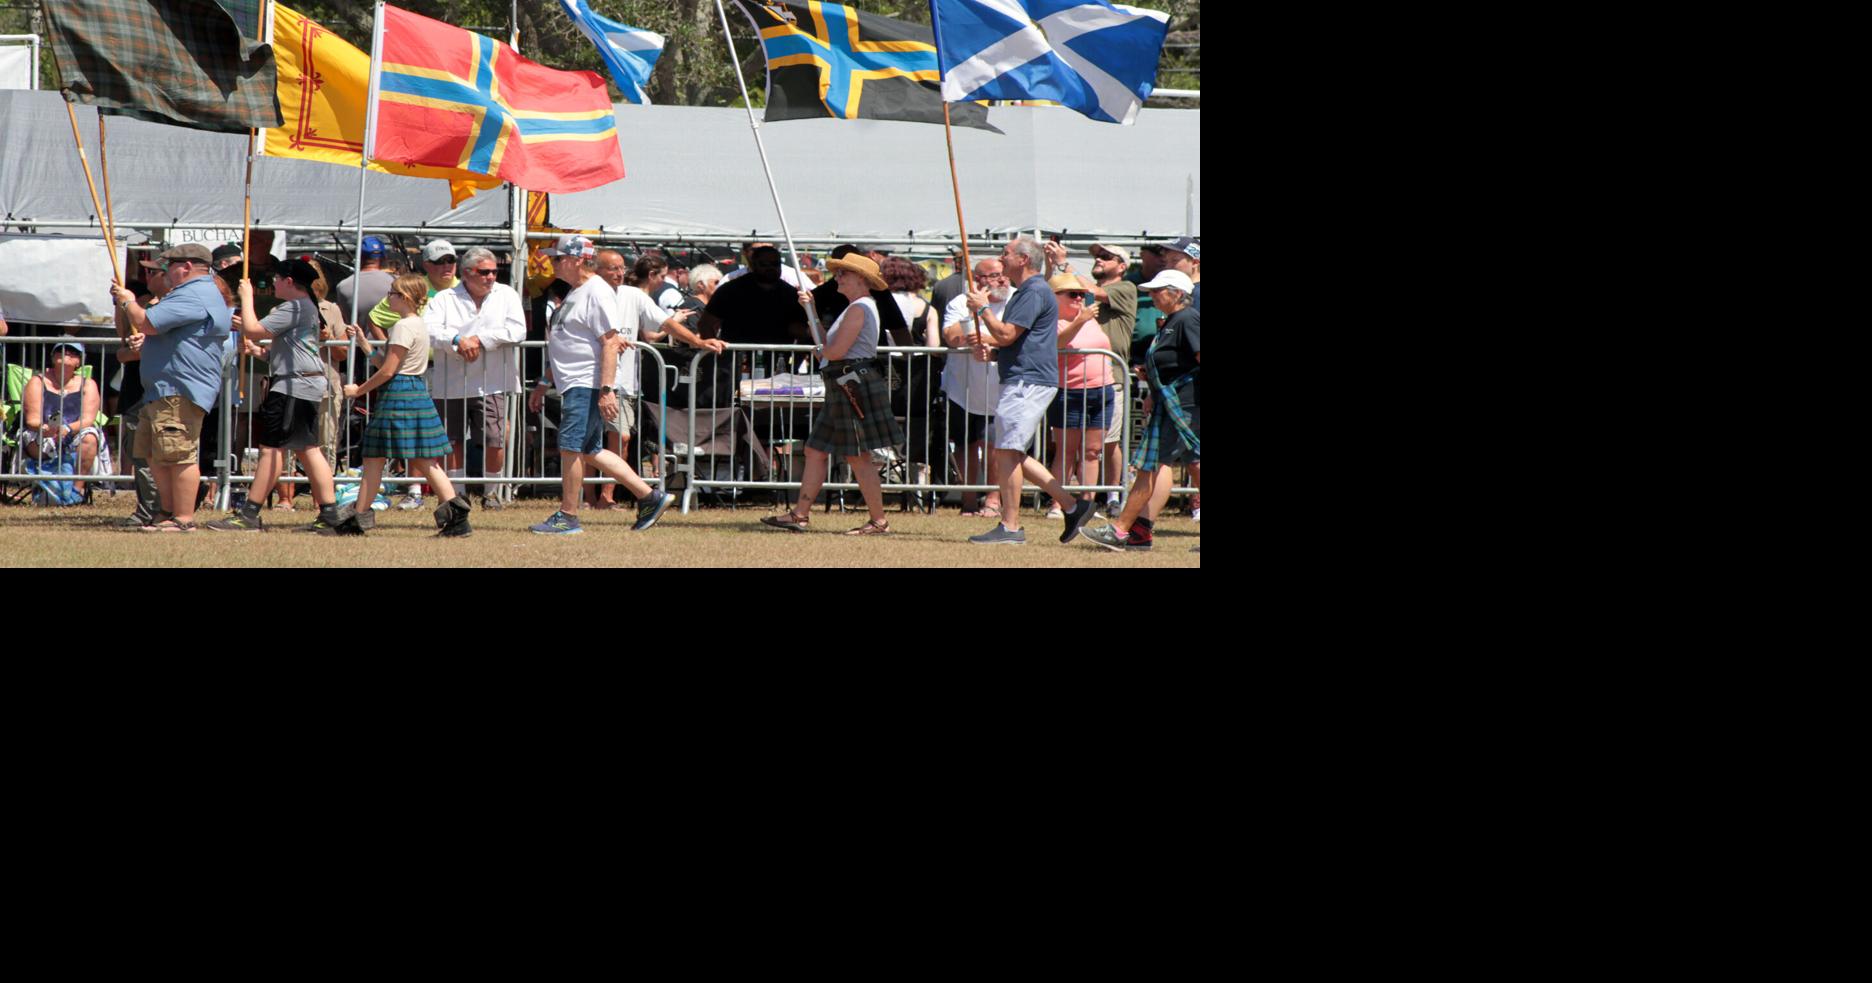 Dunedin Highland Games & Festival celebrates city’s Scottish heritage